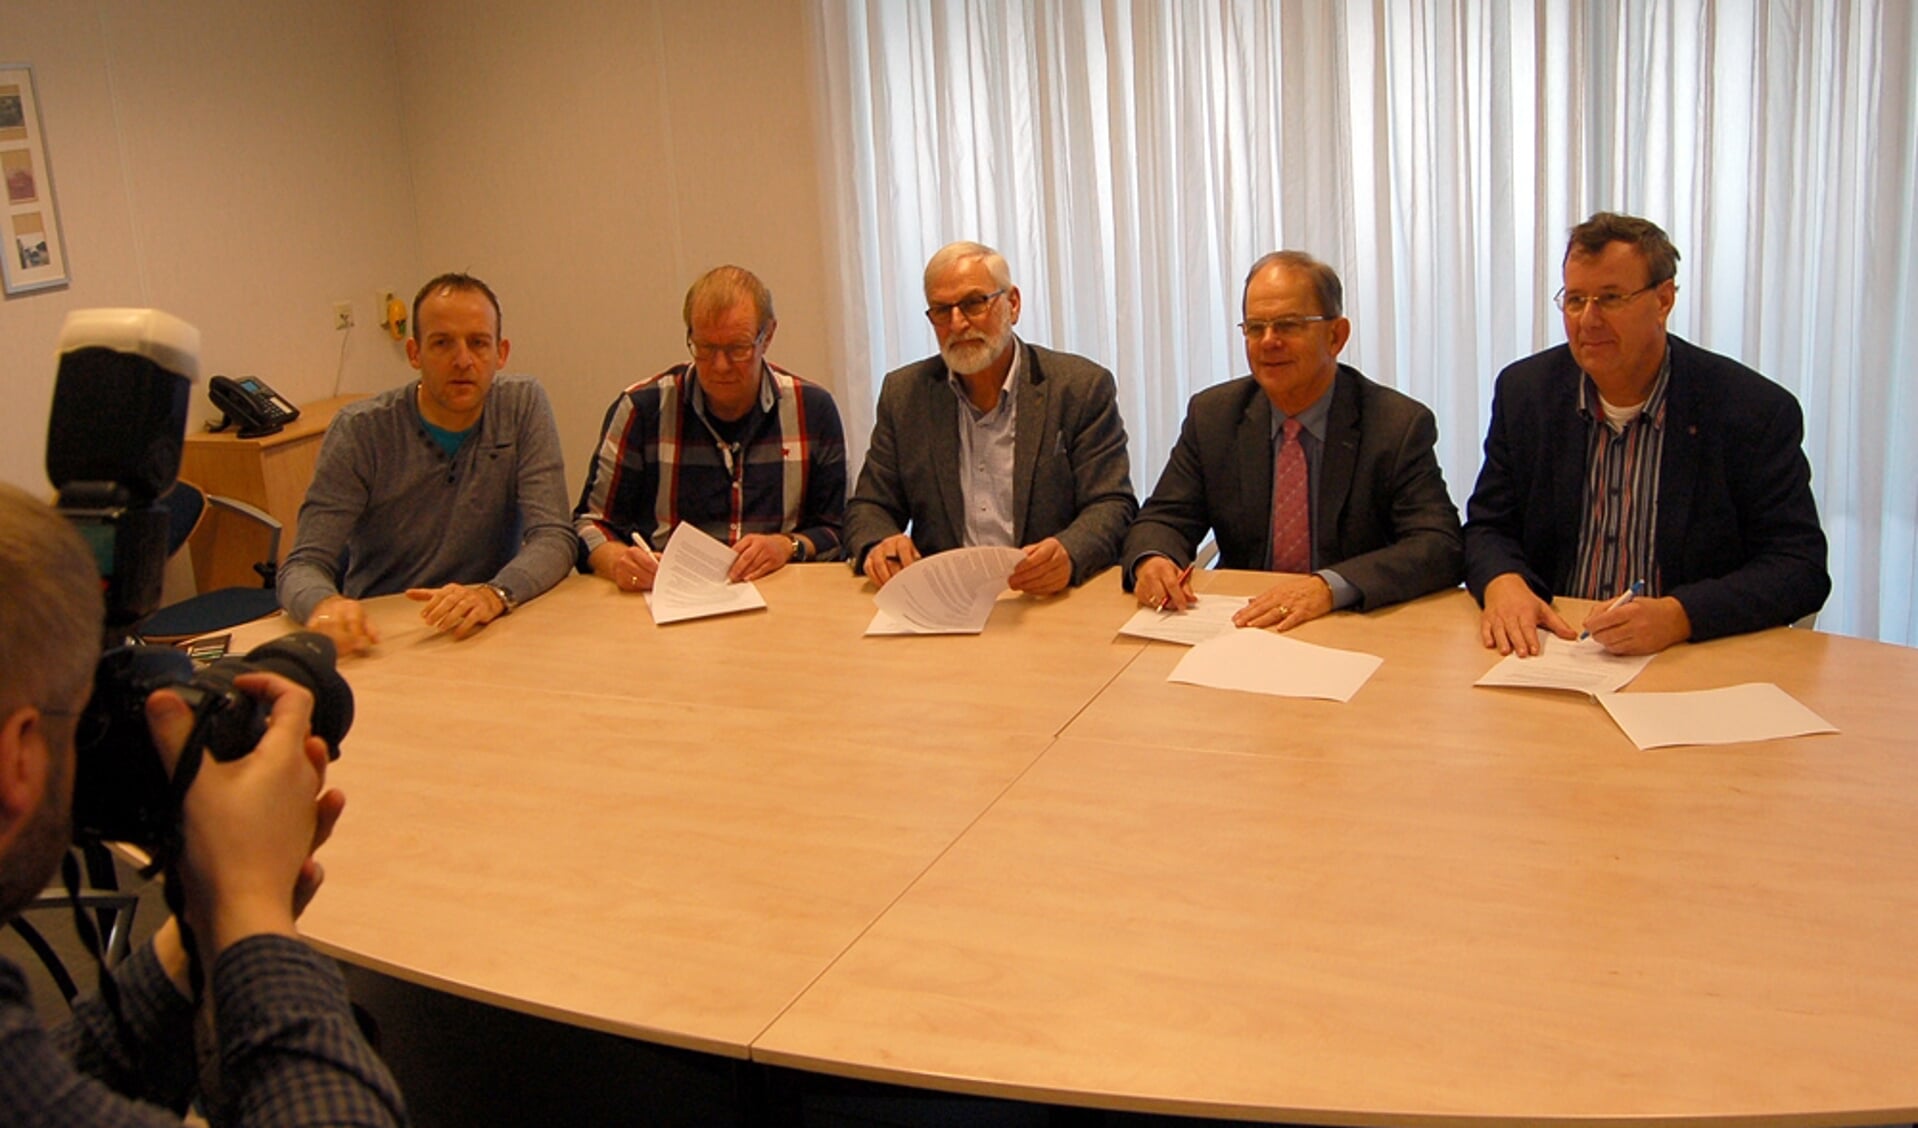  Ondertekening van de intentieverklaring. Van links naar rechts: Andru00e9 de Vries (manager VVU), Jakke Ras (secretaris VVU), Evert Jansen (voorzitter VVU), Dick Schutte (voorzitter visafslag) en Teun Visser (secretaris visafslag). 